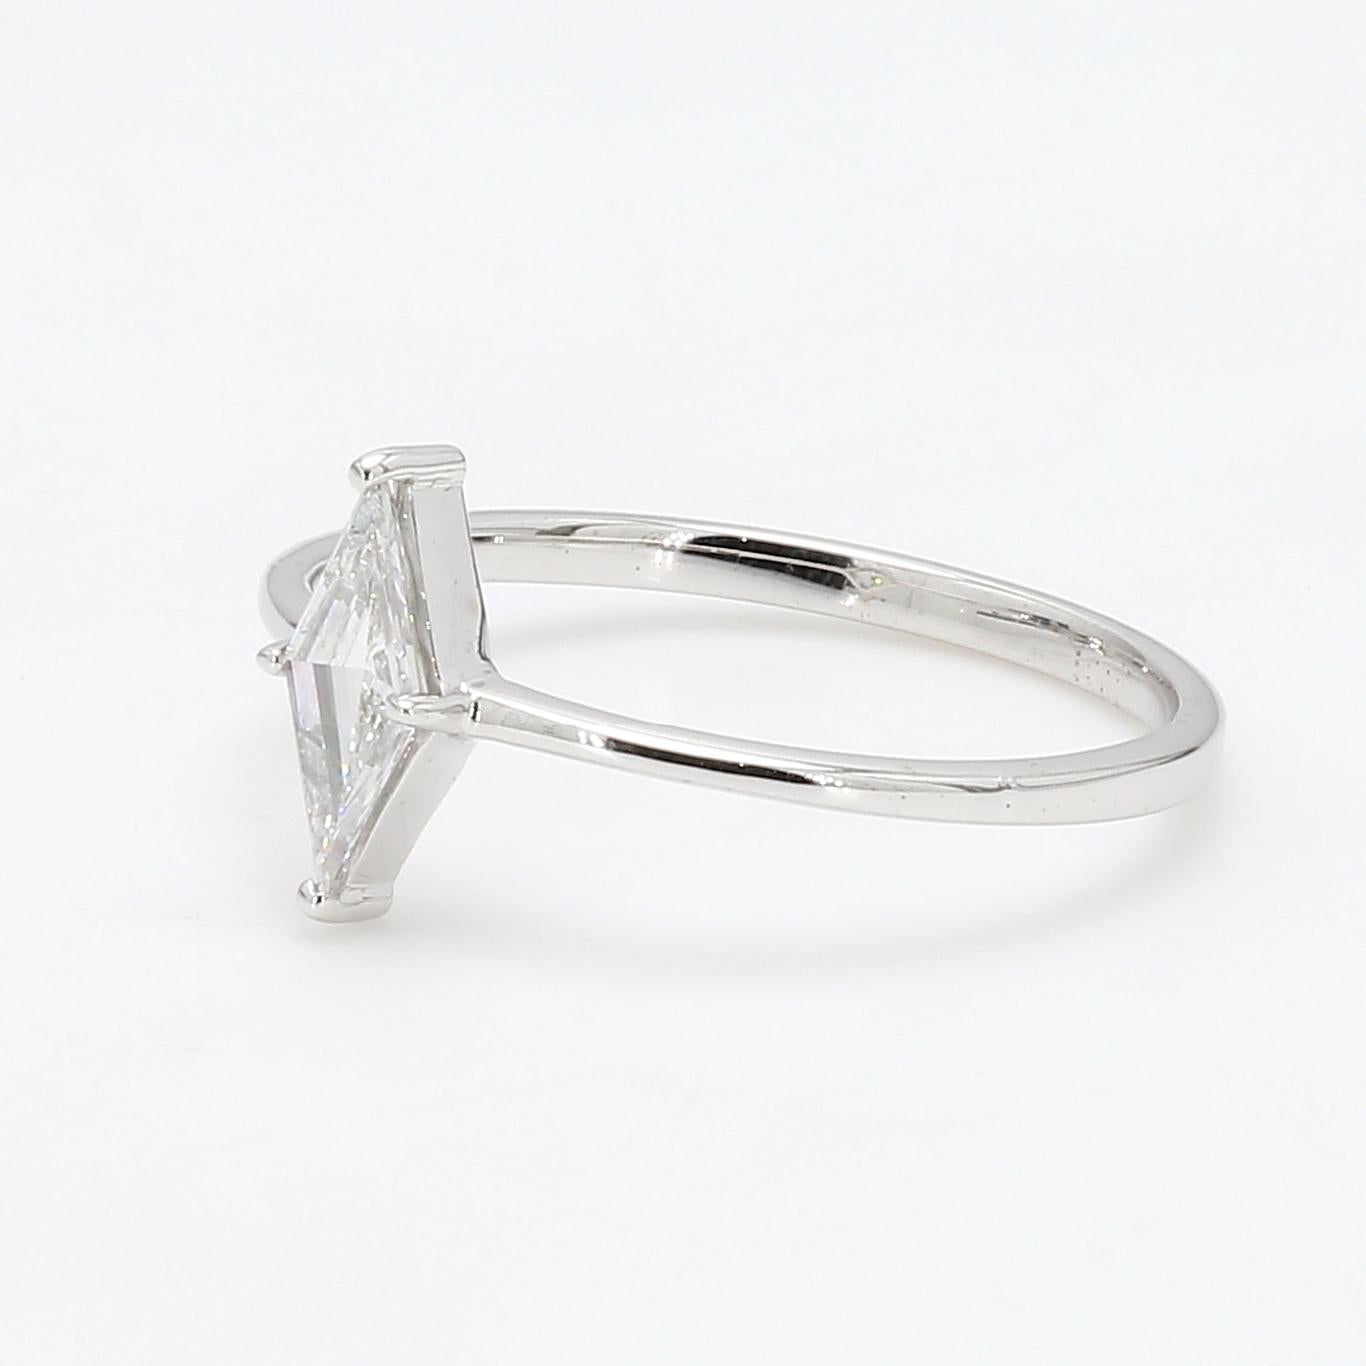 PANIM 0.25CTS Diamant en forme de cerf-volant Bague en or blanc 18K

Cette bague Panim est ornée d'un diamant cerf-volant à pierre unique. Les diamants taillés en cerf-volant sont évocateurs des designs vintage populaires dans les années 1920. Les